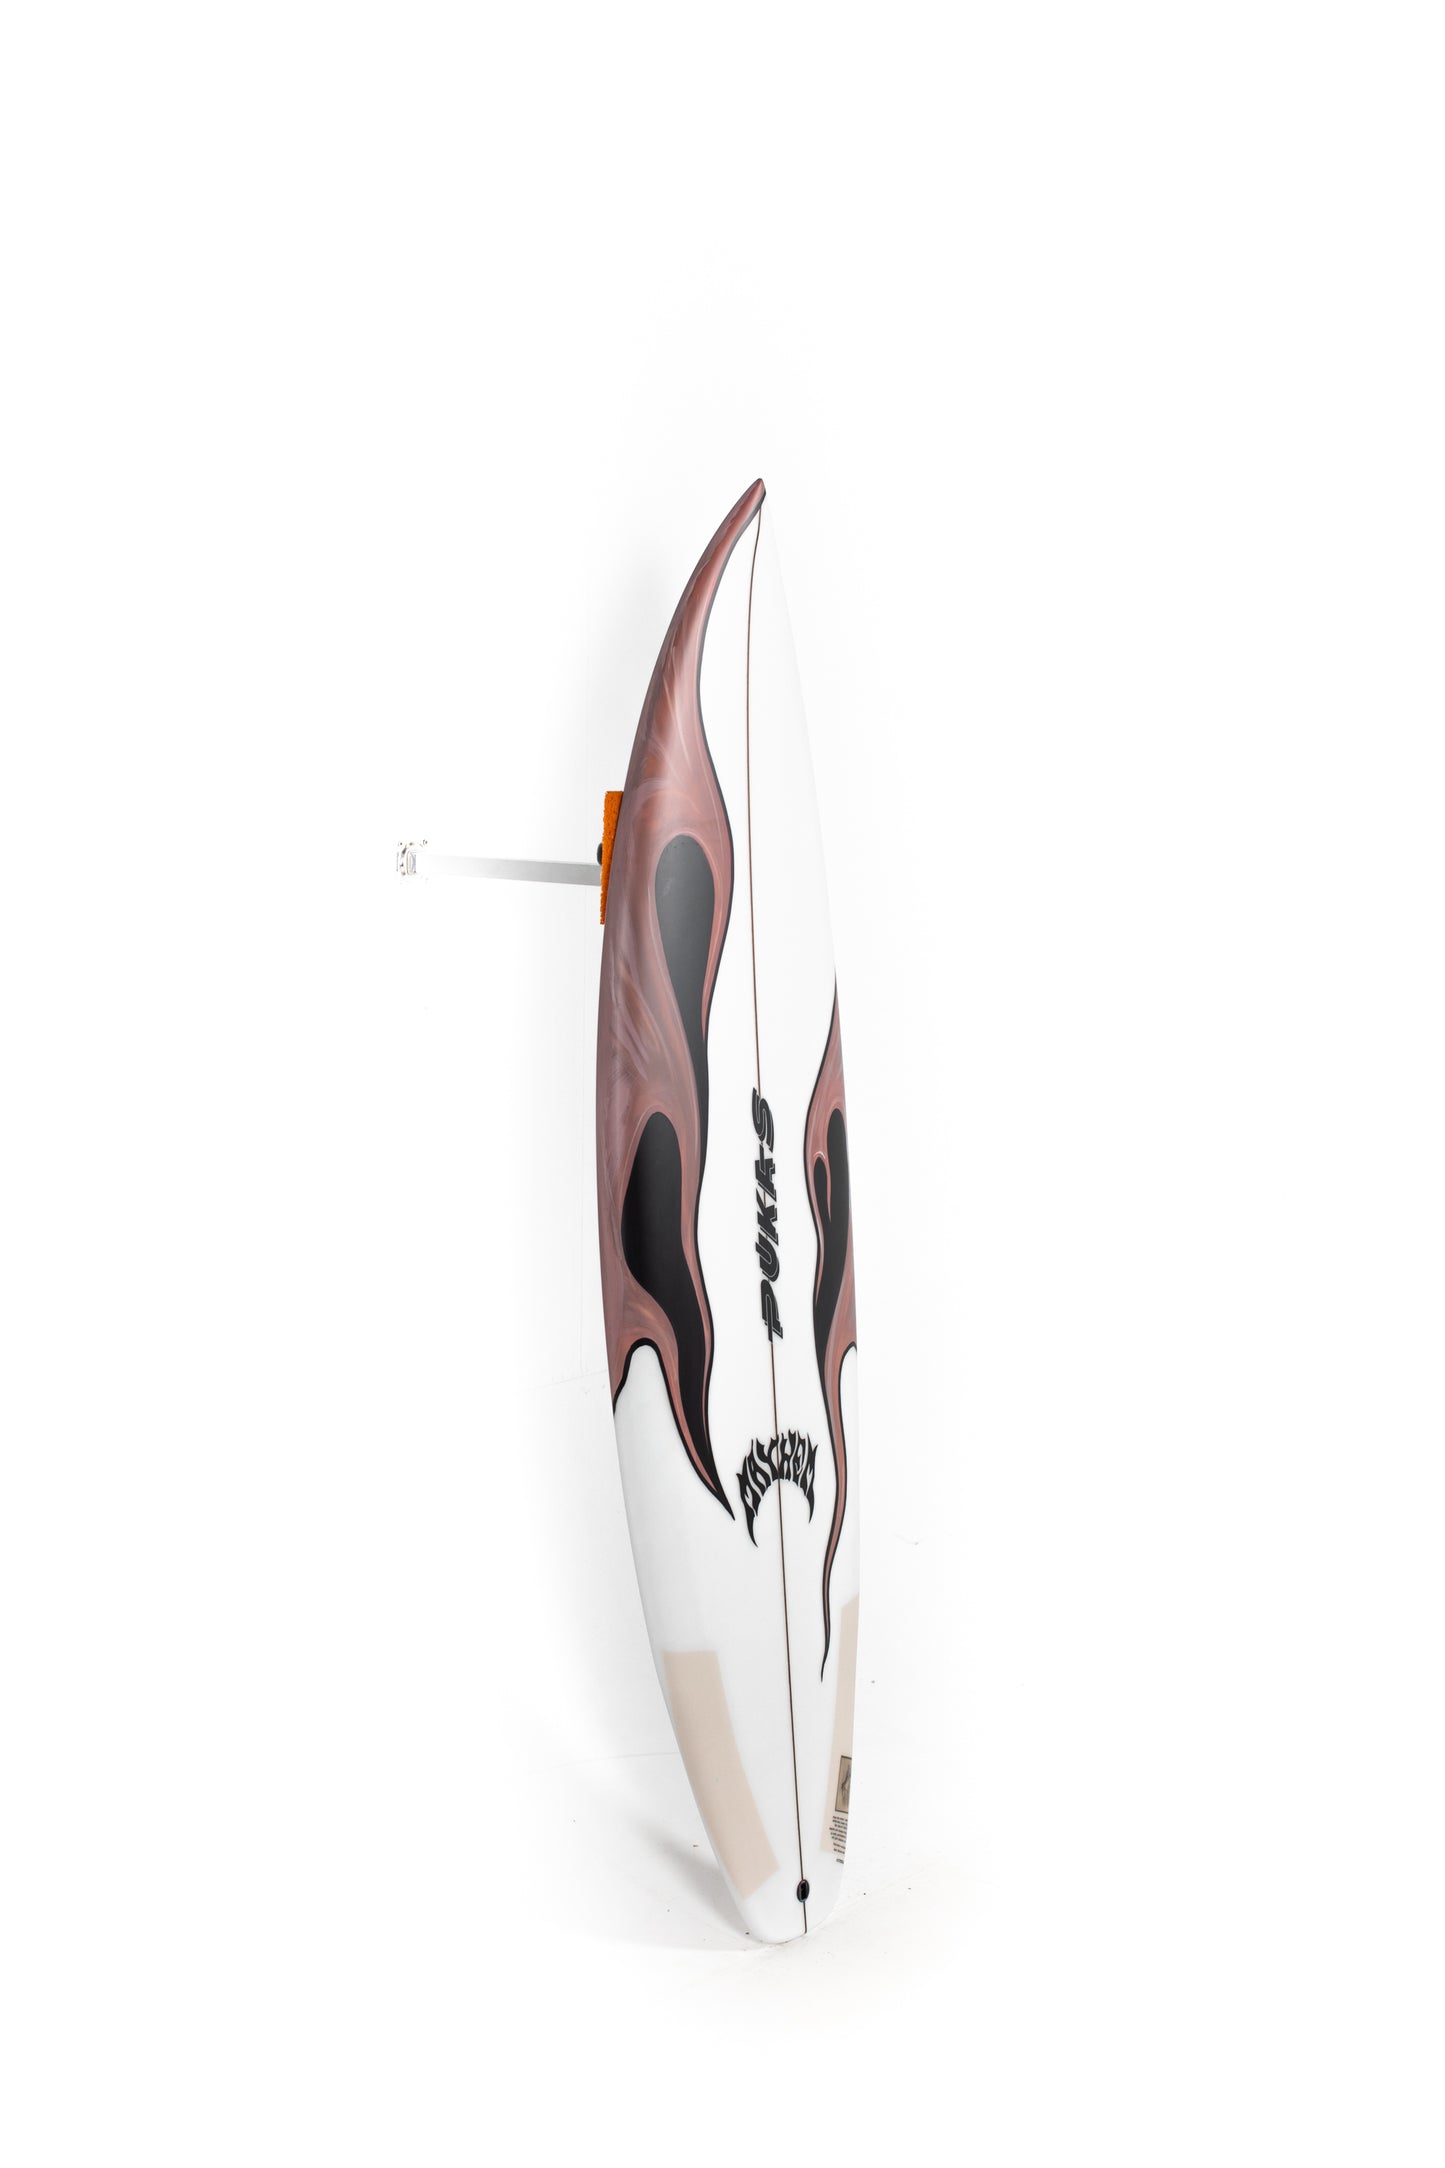 
                  
                    Pukas Surf Shop - Pukas Surfboard - HYPERLINK by Matt Biolos - 5'7" x 19.25" x 2.32" - 27.10L - PM01123
                  
                